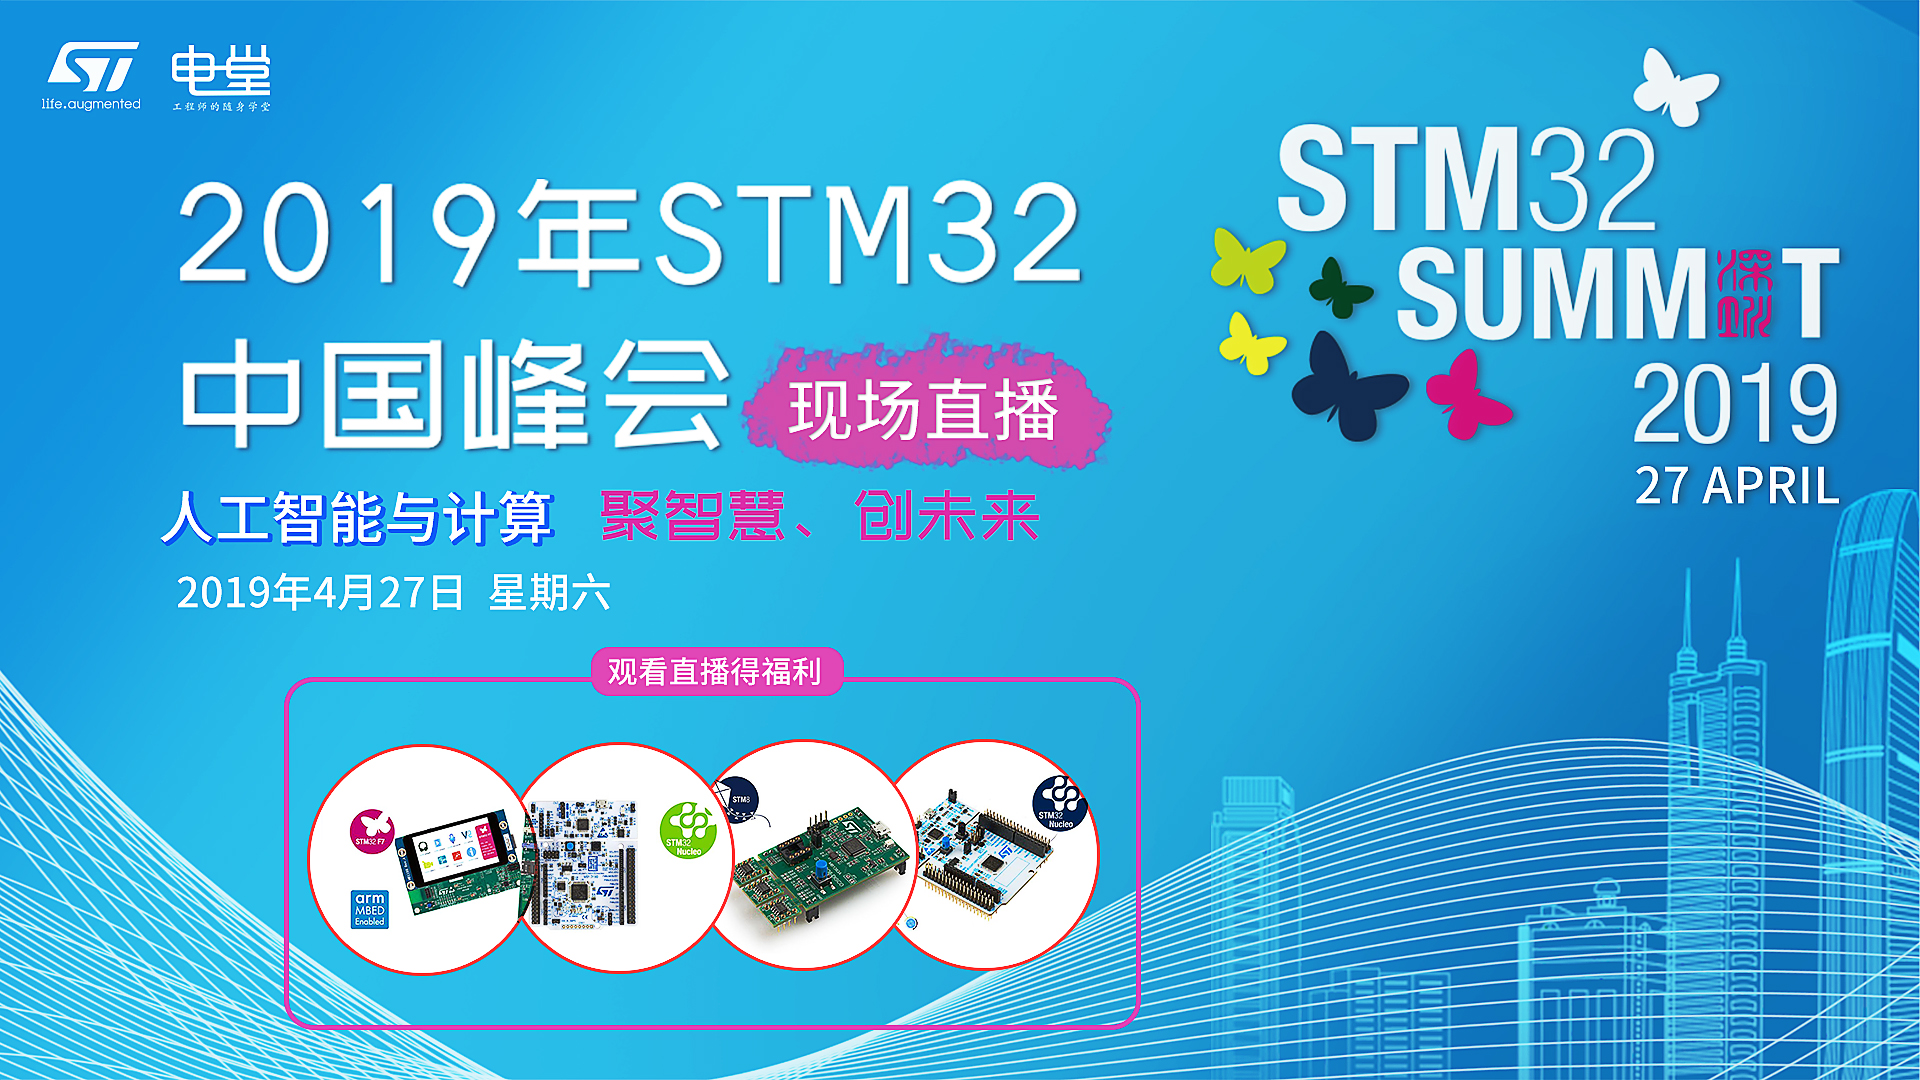 2019 STM32峰会 - 人工智能 & 云接入算研讨会 